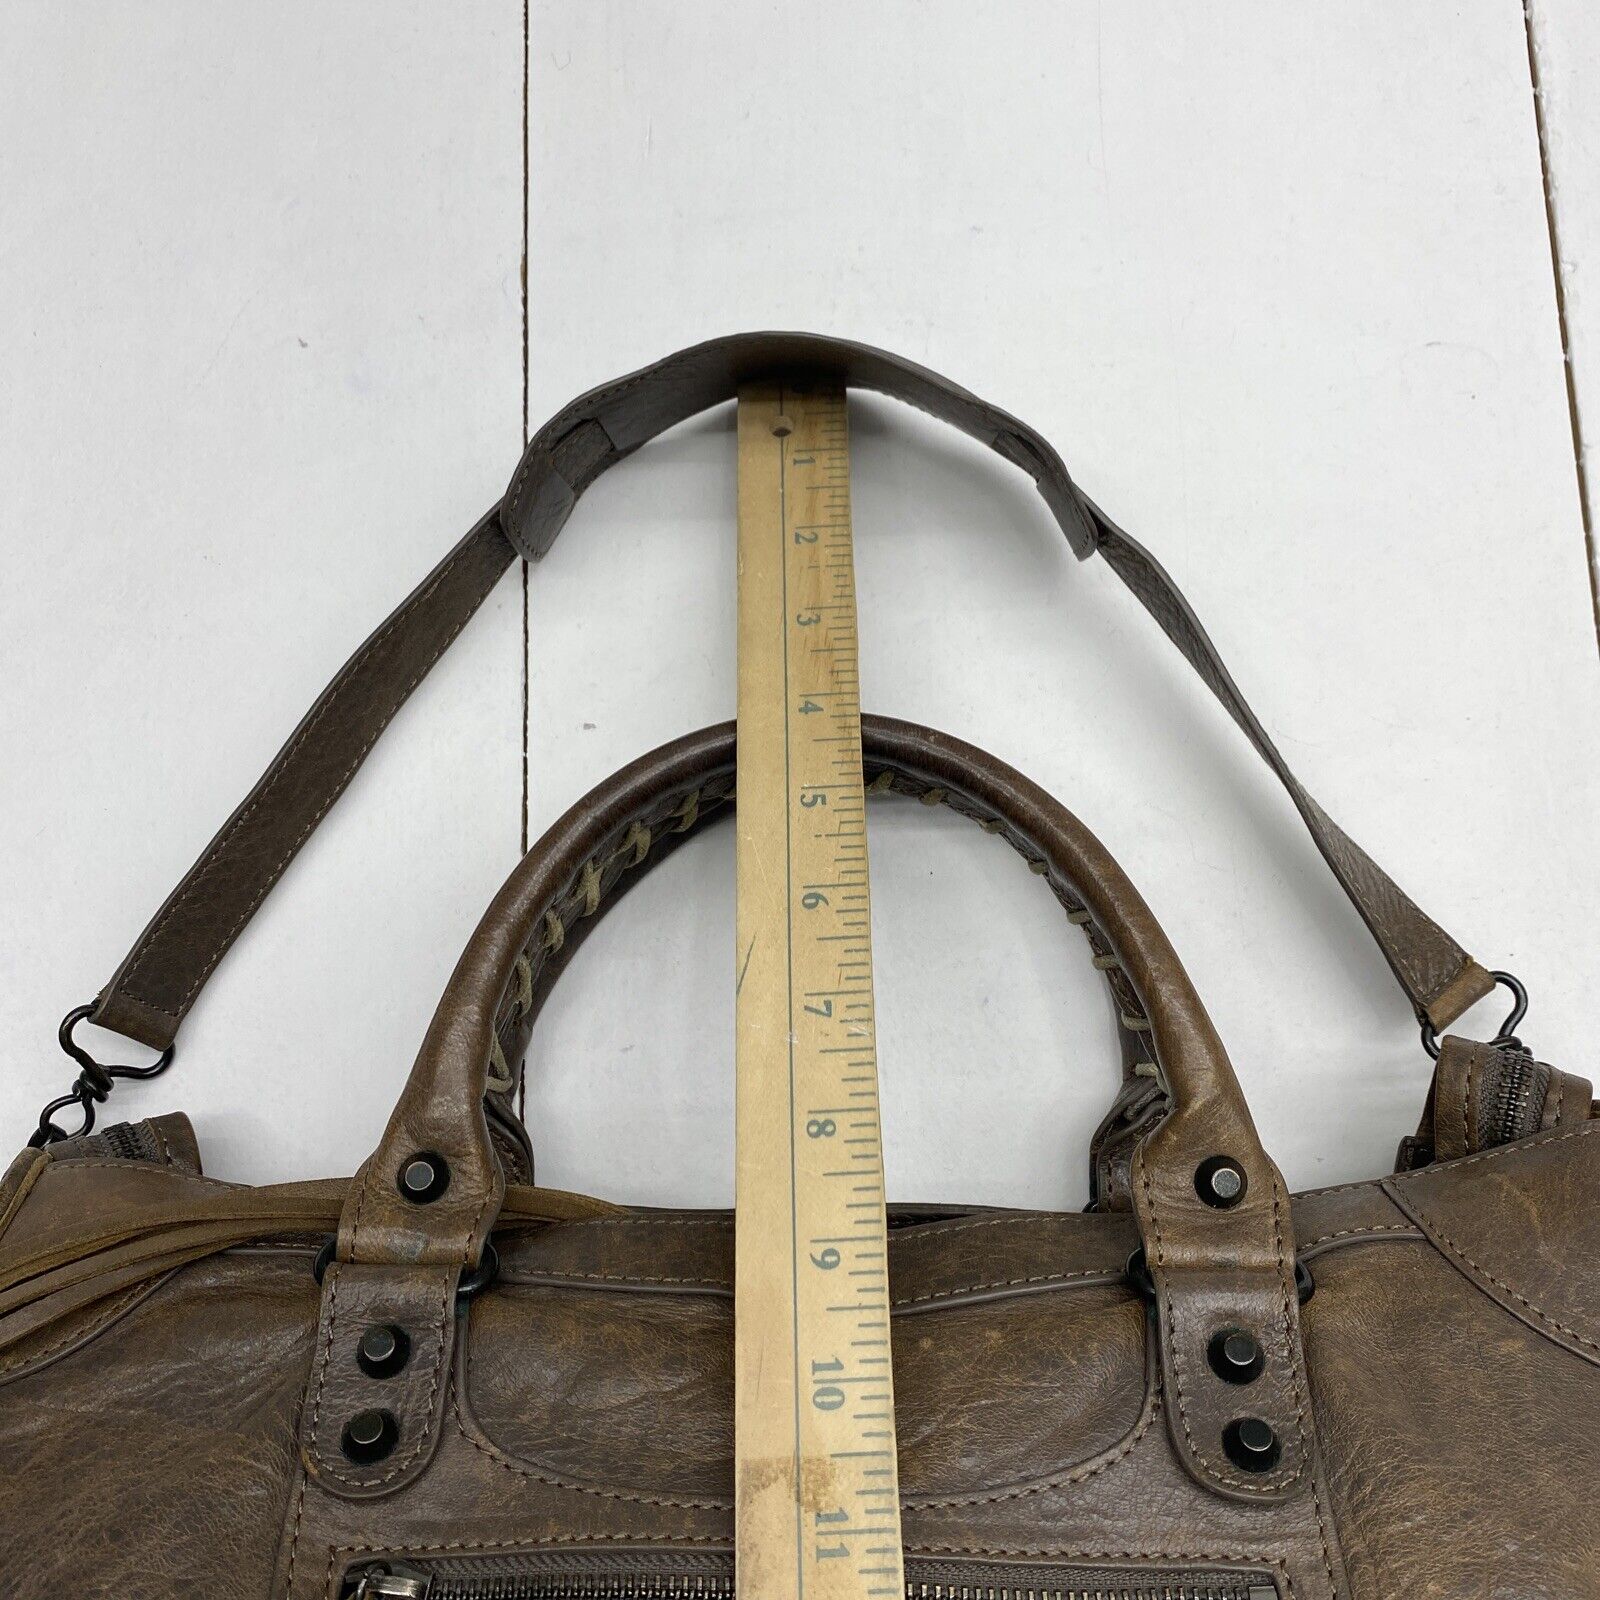 Balenciaga Crossbody Strap Handbags